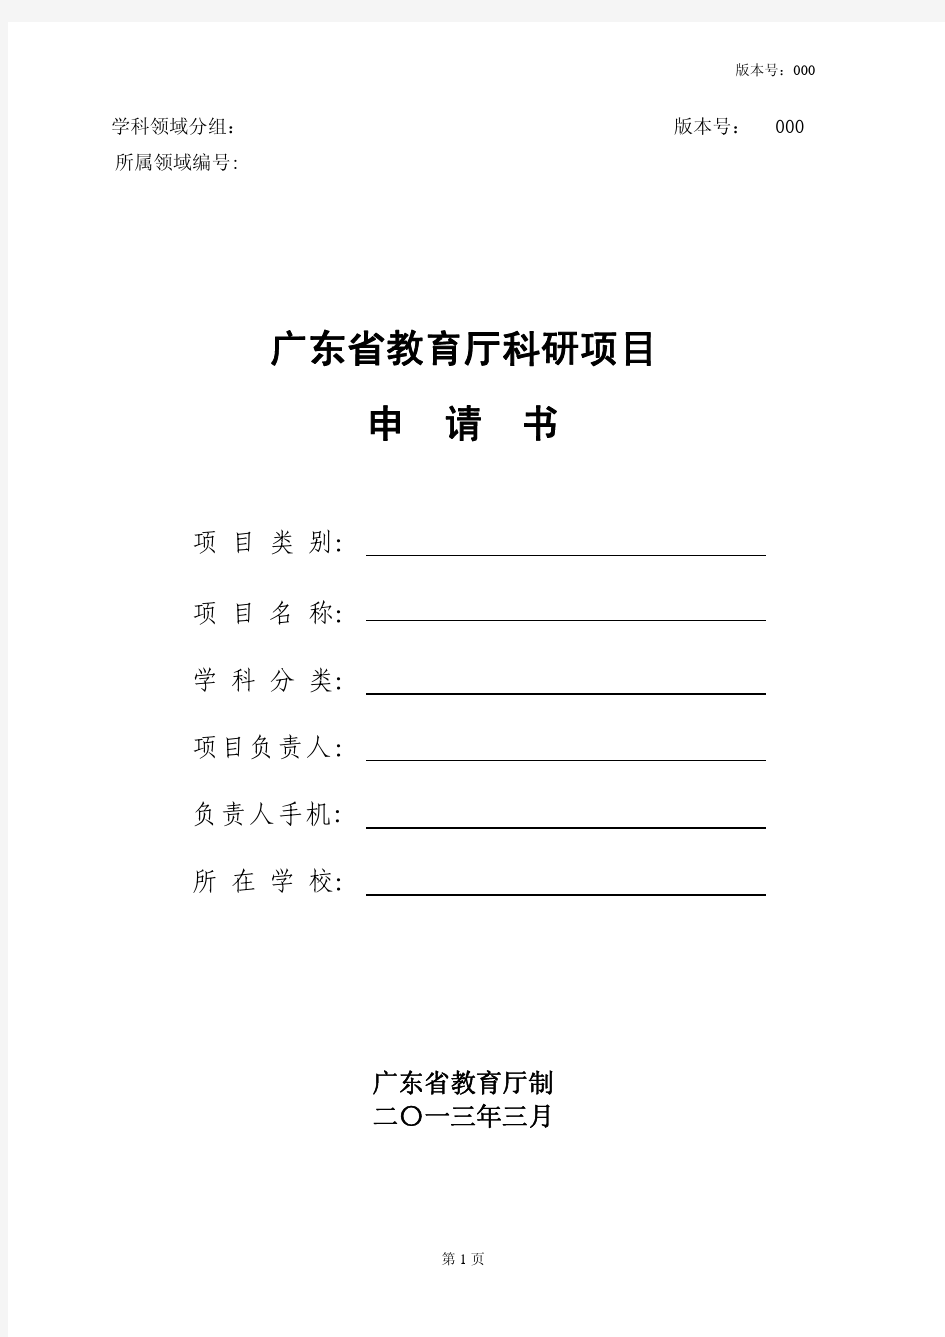 广东高校优秀青年创新人才培养计划项目申请书(自然科学)